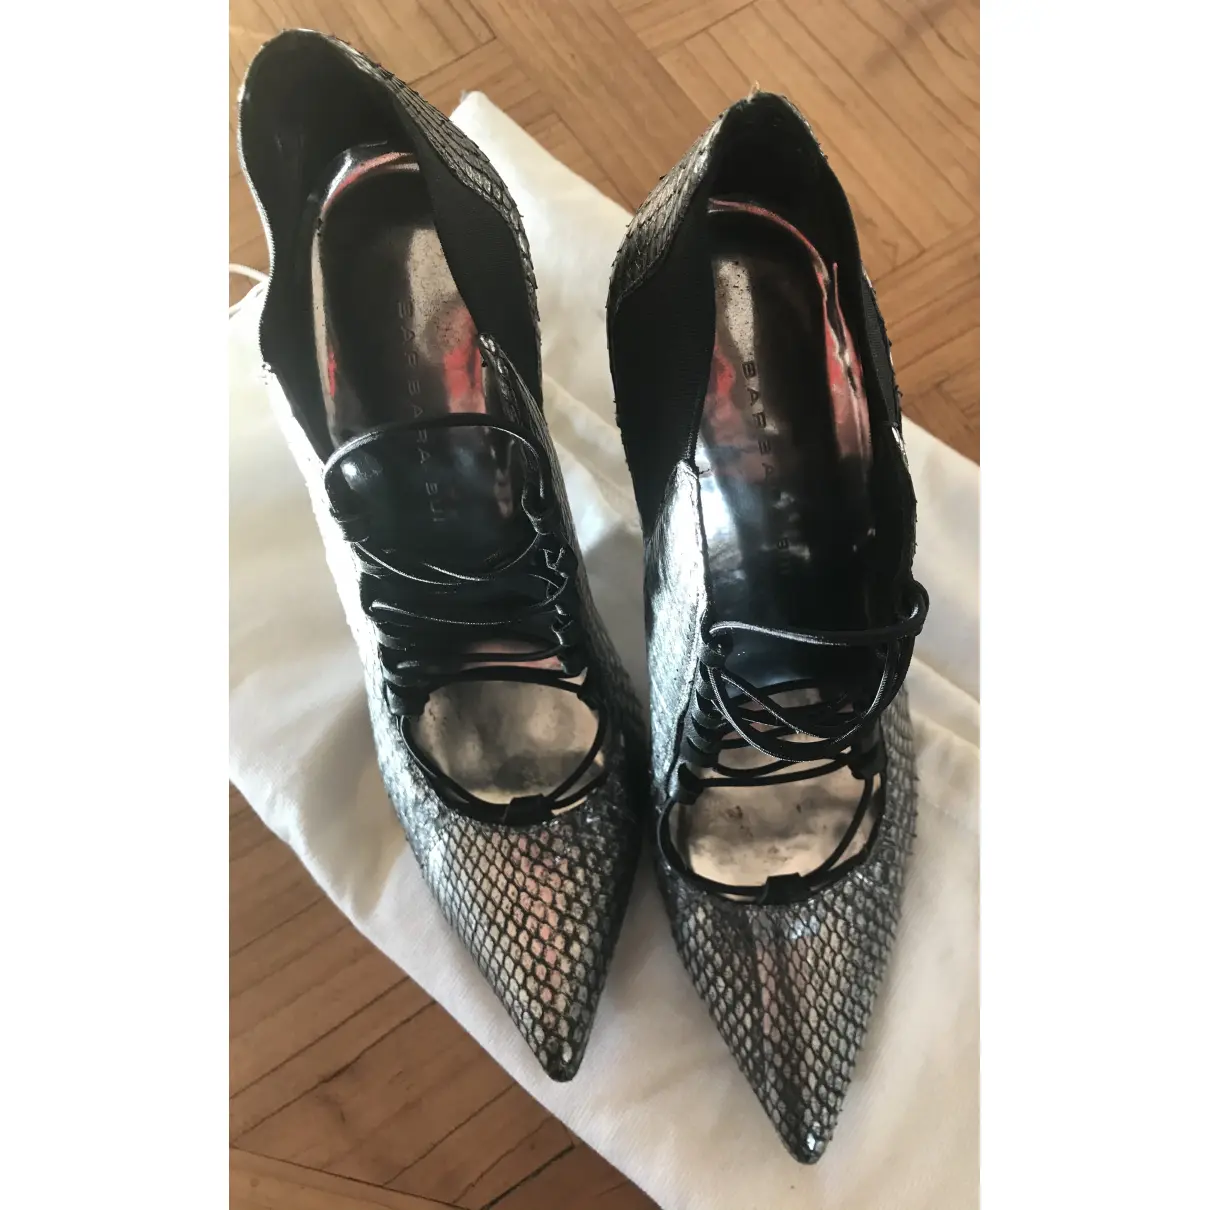 Buy Barbara Bui Python heels online